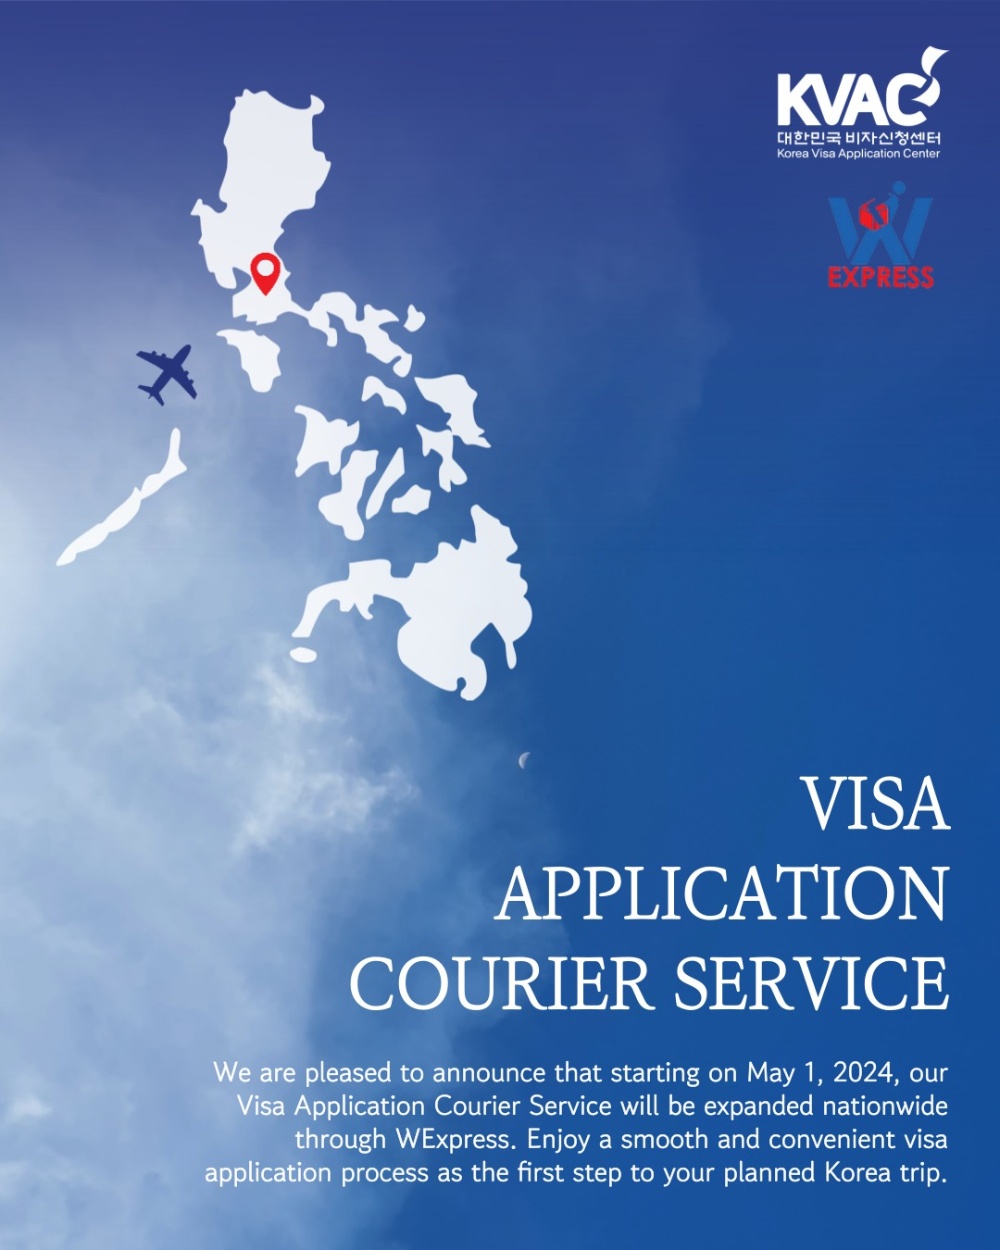 菲律宾人可通过邮寄方式提交韩国旅游签申请